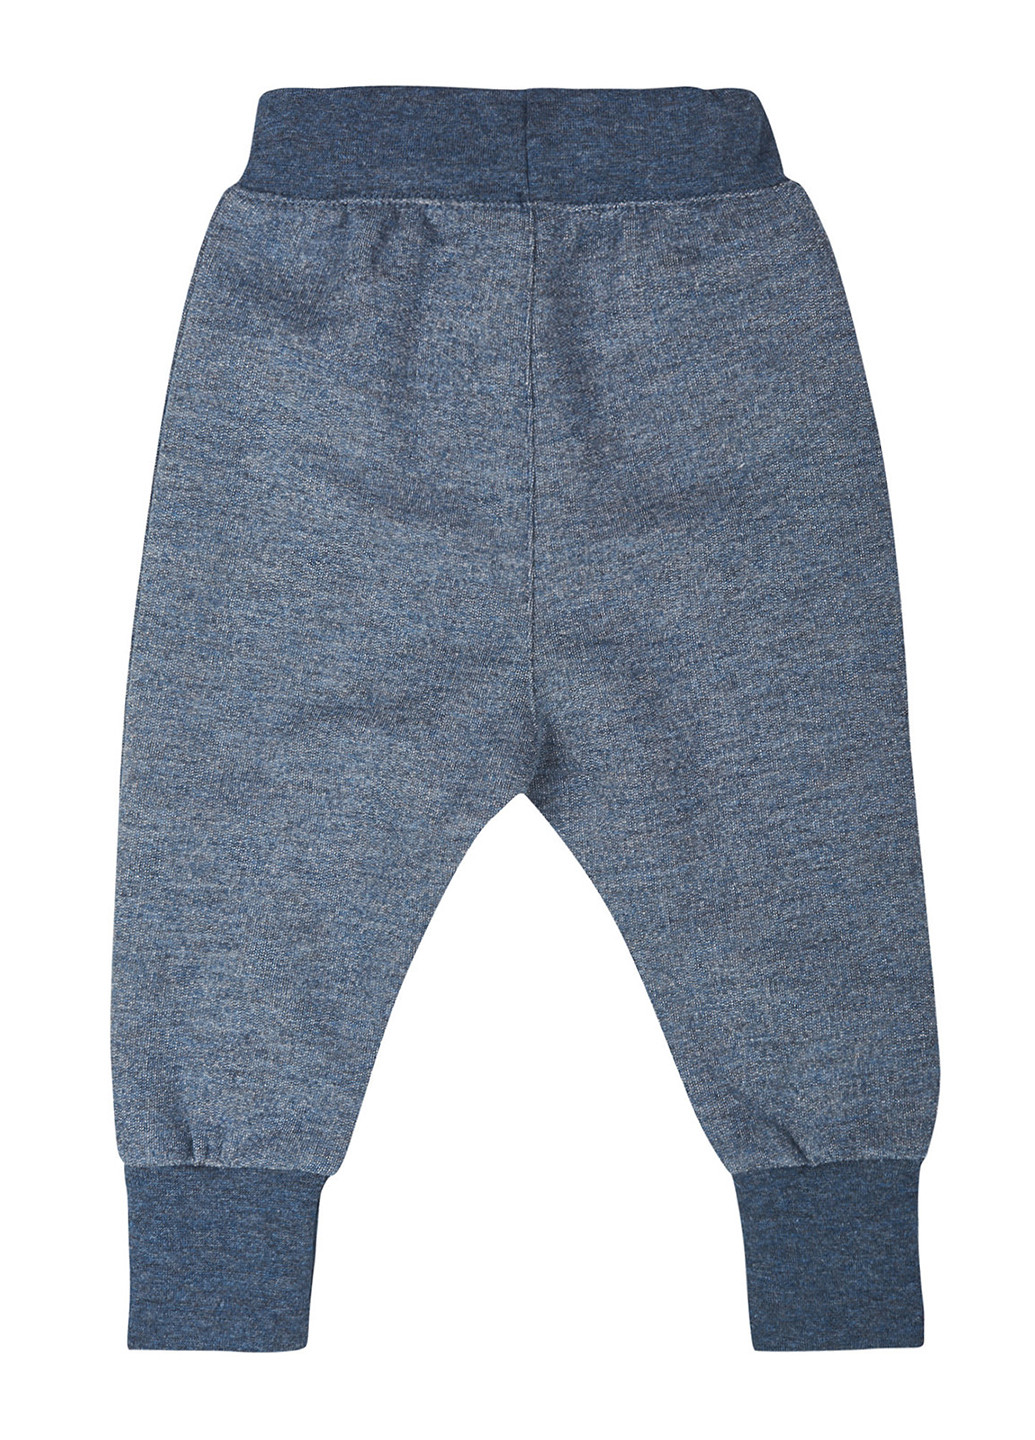 Серо-синие домашние демисезонные брюки Ляля